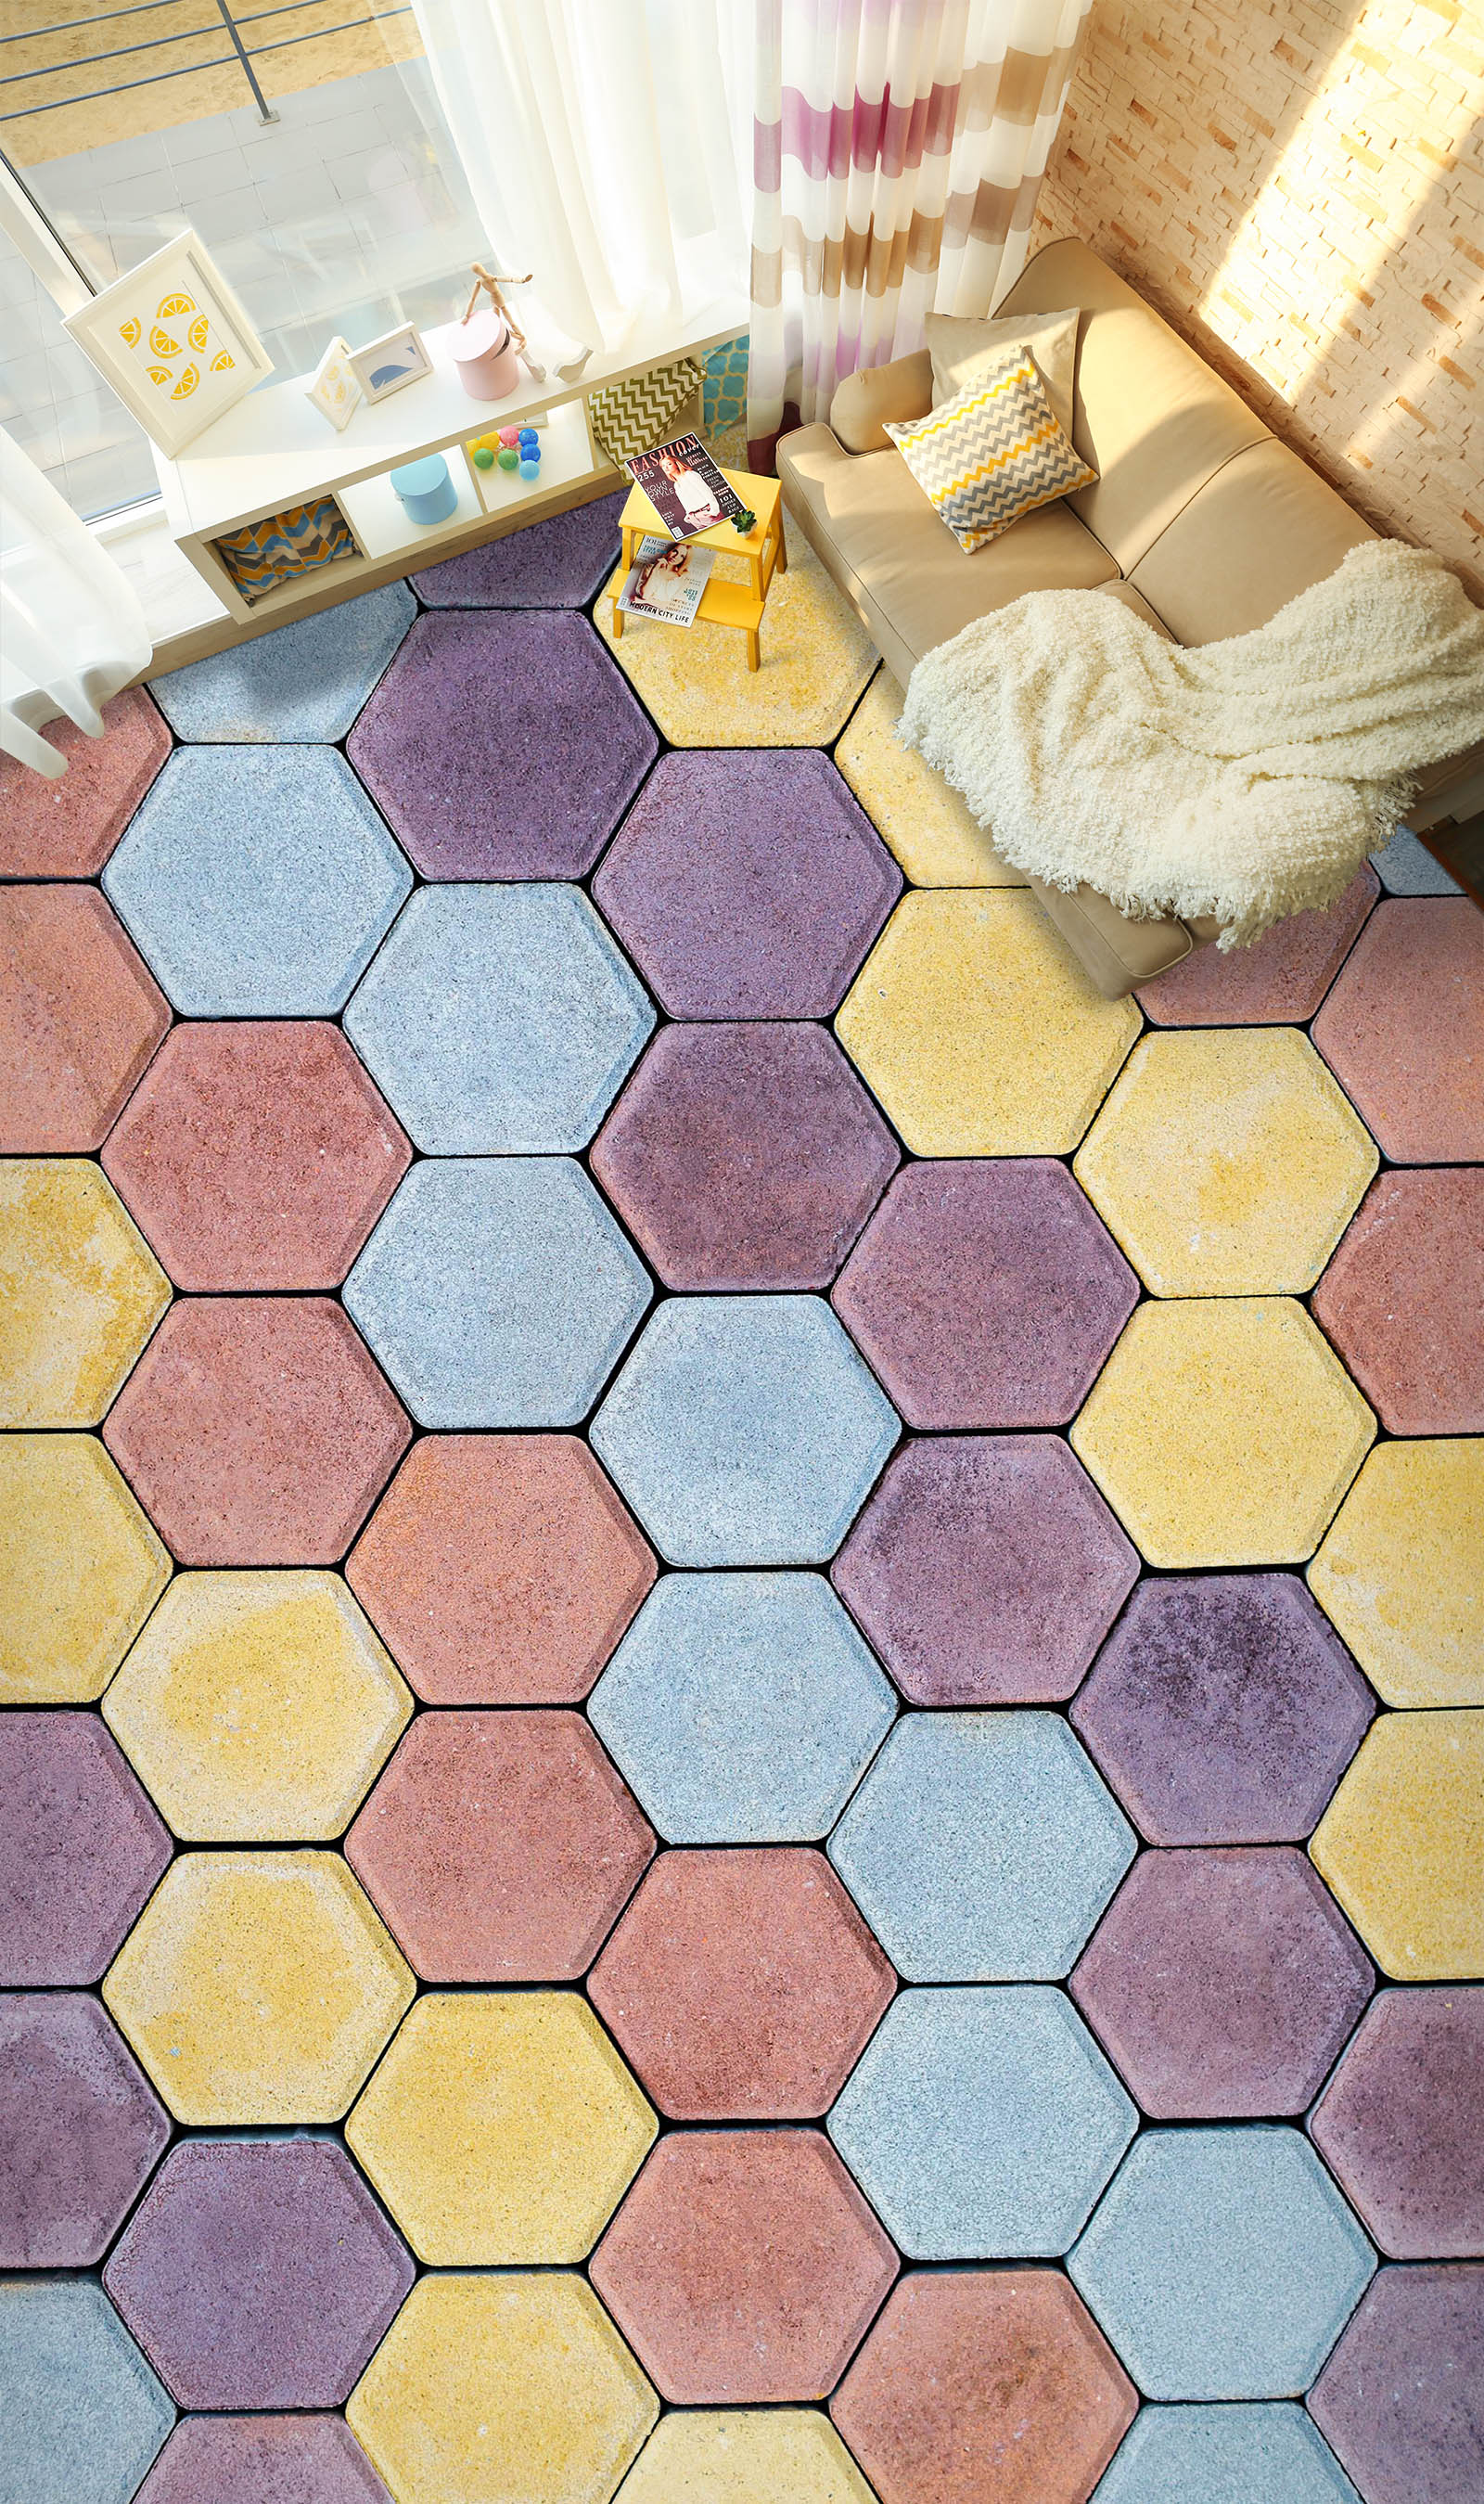 3D Warm Hexagonal Colors 803 Floor Mural  Wallpaper Murals Rug & Mat Print Epoxy waterproof bath floor